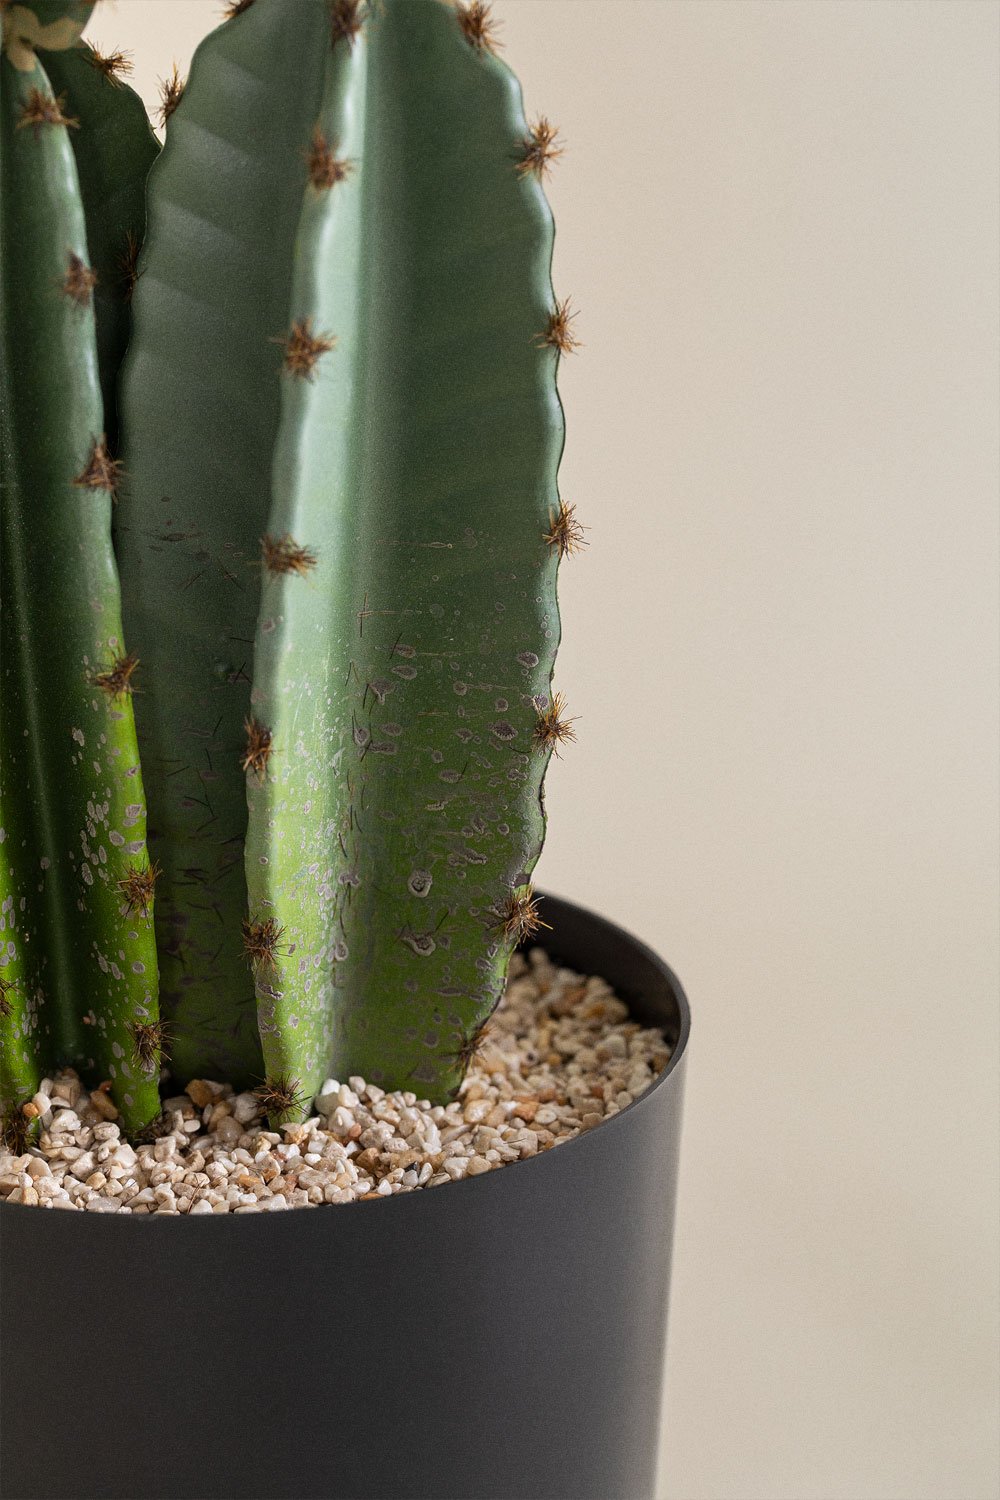 Kaktus San Pedro Künstlich - Künstliche Pflanzen